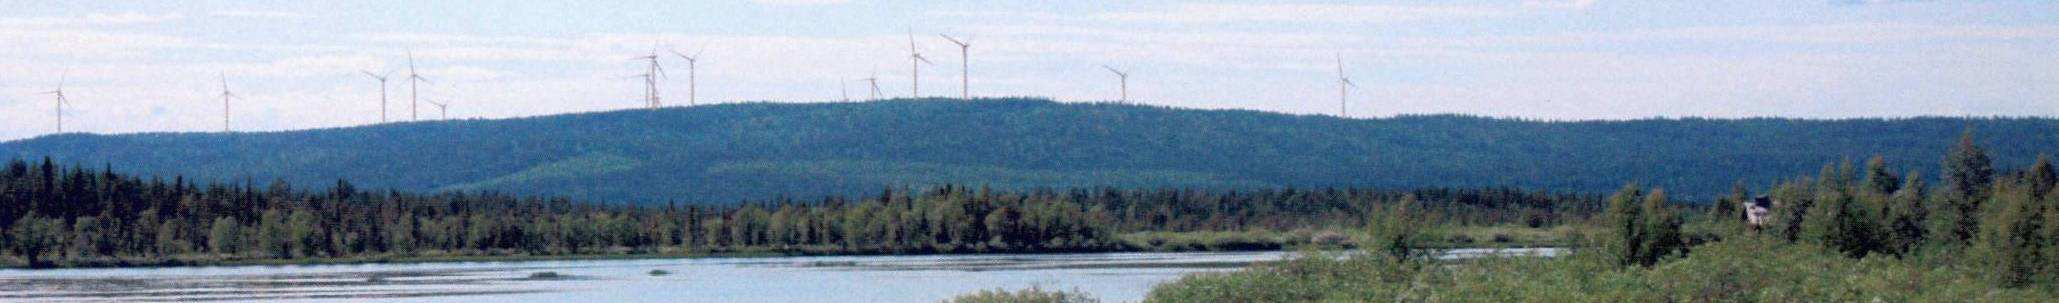 Tuulivoimahankkeita tulisi ohjata kokonaisuutena Tuulivoimahankkeita on Lapin alueella käynnissä parikymmentä.